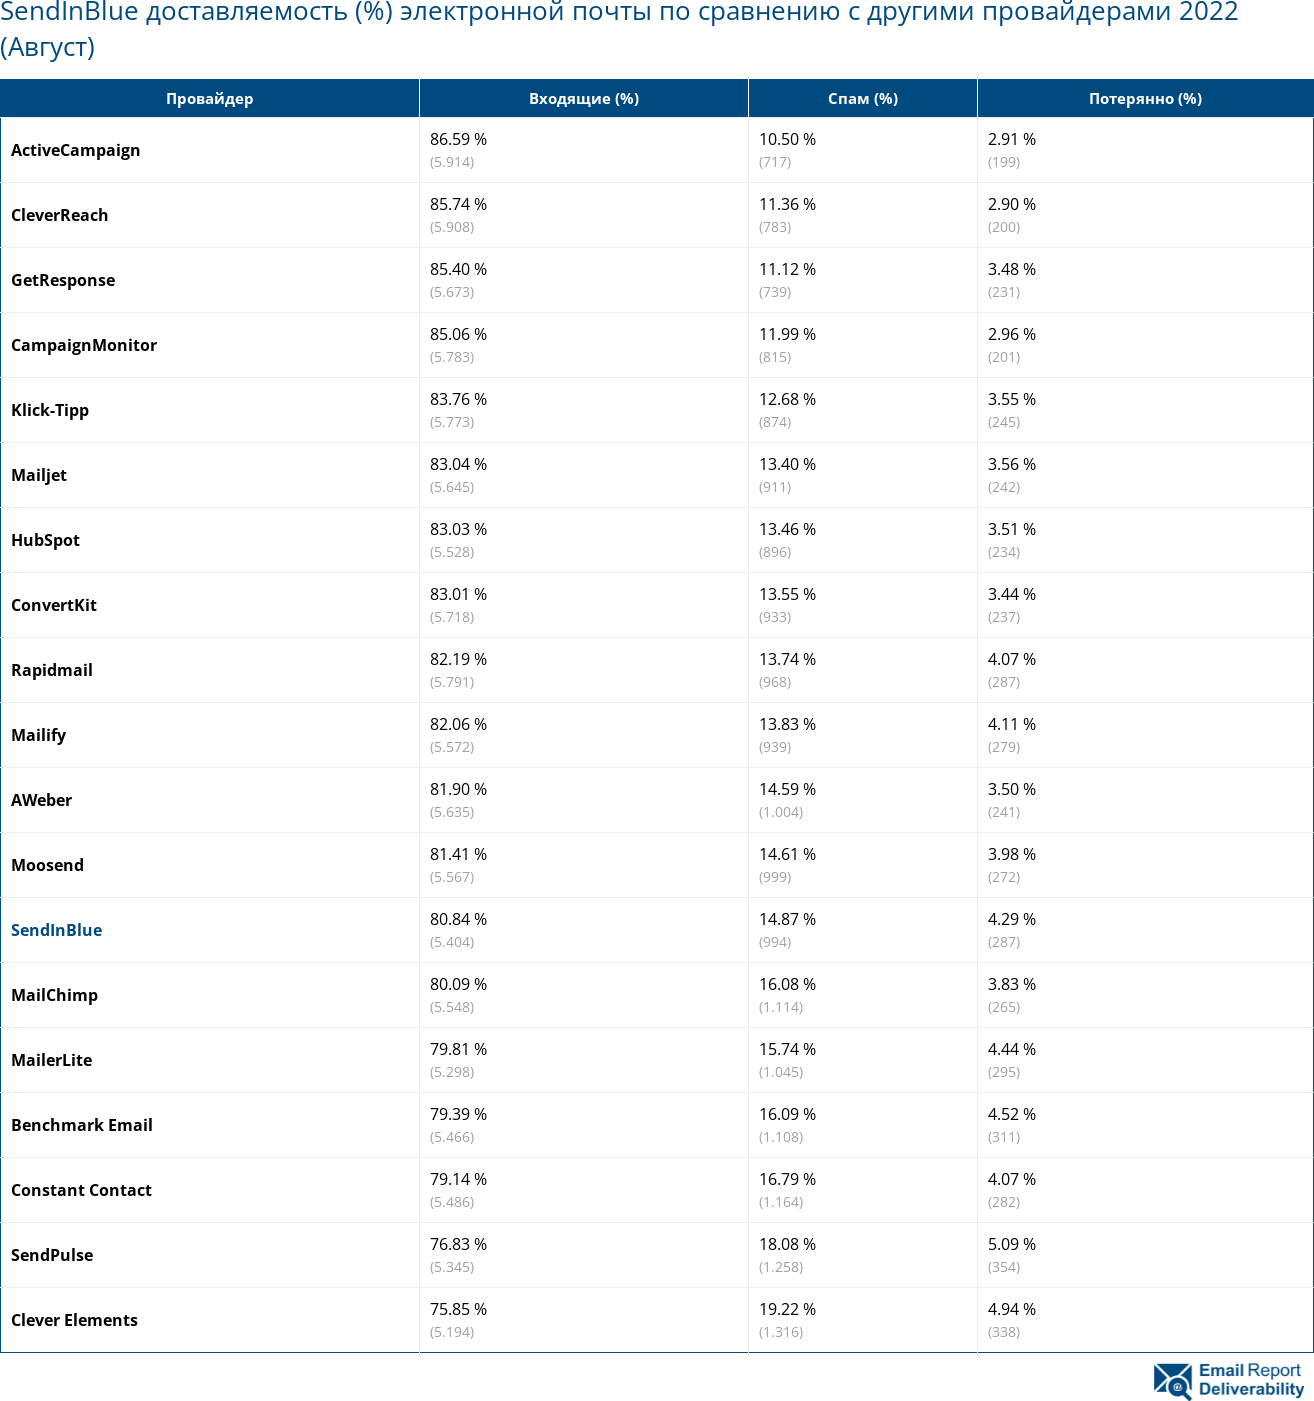 SendInBlue доставляемость (%) электронной почты по сравнению с другими провайдерами 2022 (Август)